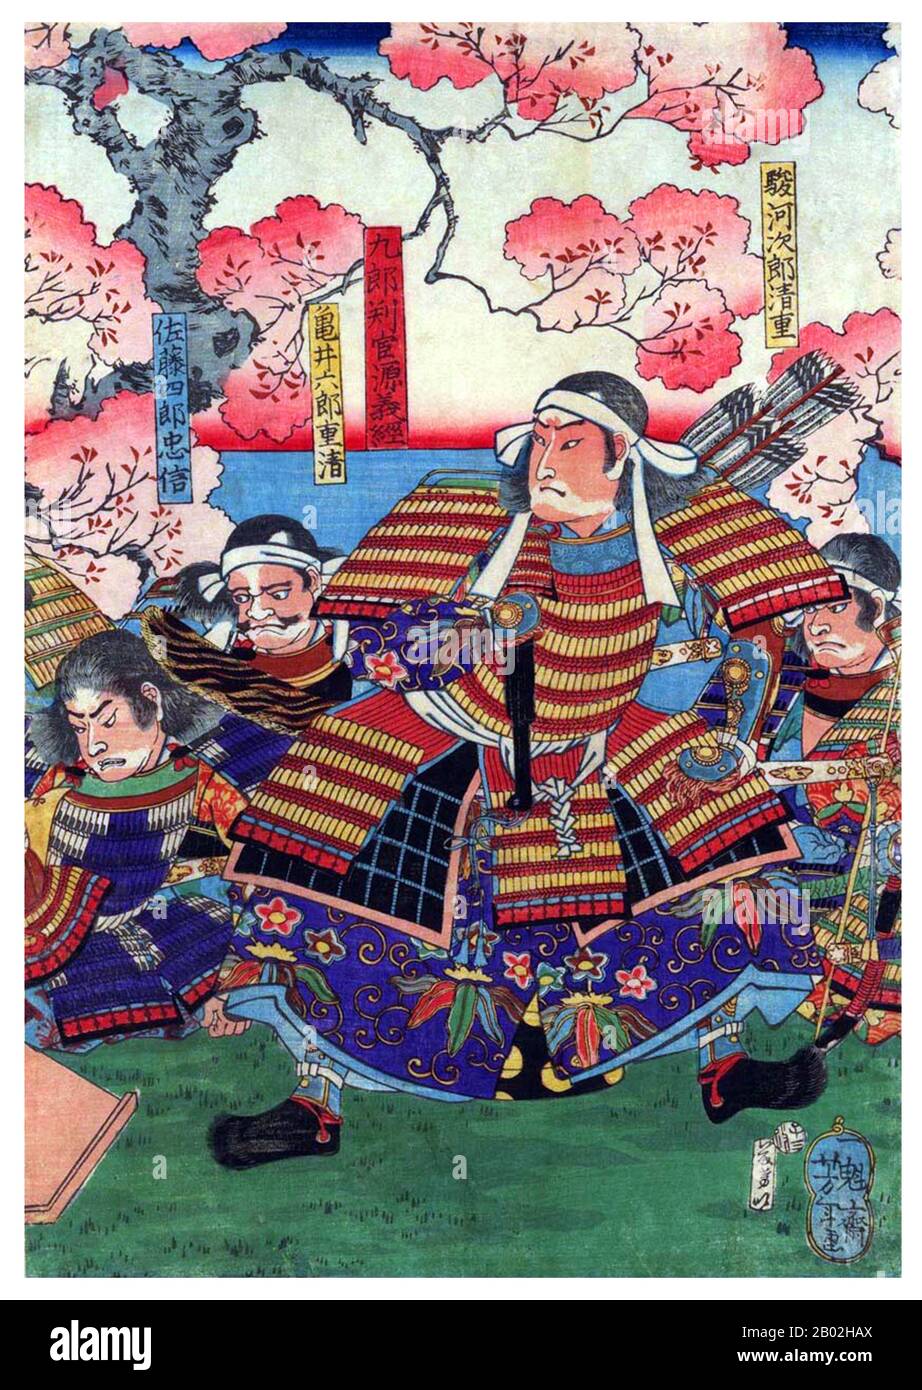 Minamoto no Yoshitsune (源 義経, 1159 – 15 giugno 1189) è stato un generale del clan Minamoto del Giappone nel tardo periodo Heian e Kamakura. Yoshitsune era il nono figlio di Minamoto no Yoshitomo, e il terzo figlio e figlio finale che Yoshitomo avrebbe padre con Tokiwa Gozen. Il fratello maggiore di Yoshitsune Minamoto no Yoritomo (il terzo figlio di Yoshitomo) fondò lo shogunato di Kamakura. È considerato uno dei più grandi e popolari guerrieri della sua epoca, e uno dei più famosi combattenti samurai nella storia del Giappone. Musashibō Benkei (武蔵坊弁慶, 1155–1189), popolarmente chiamato Benke Foto Stock